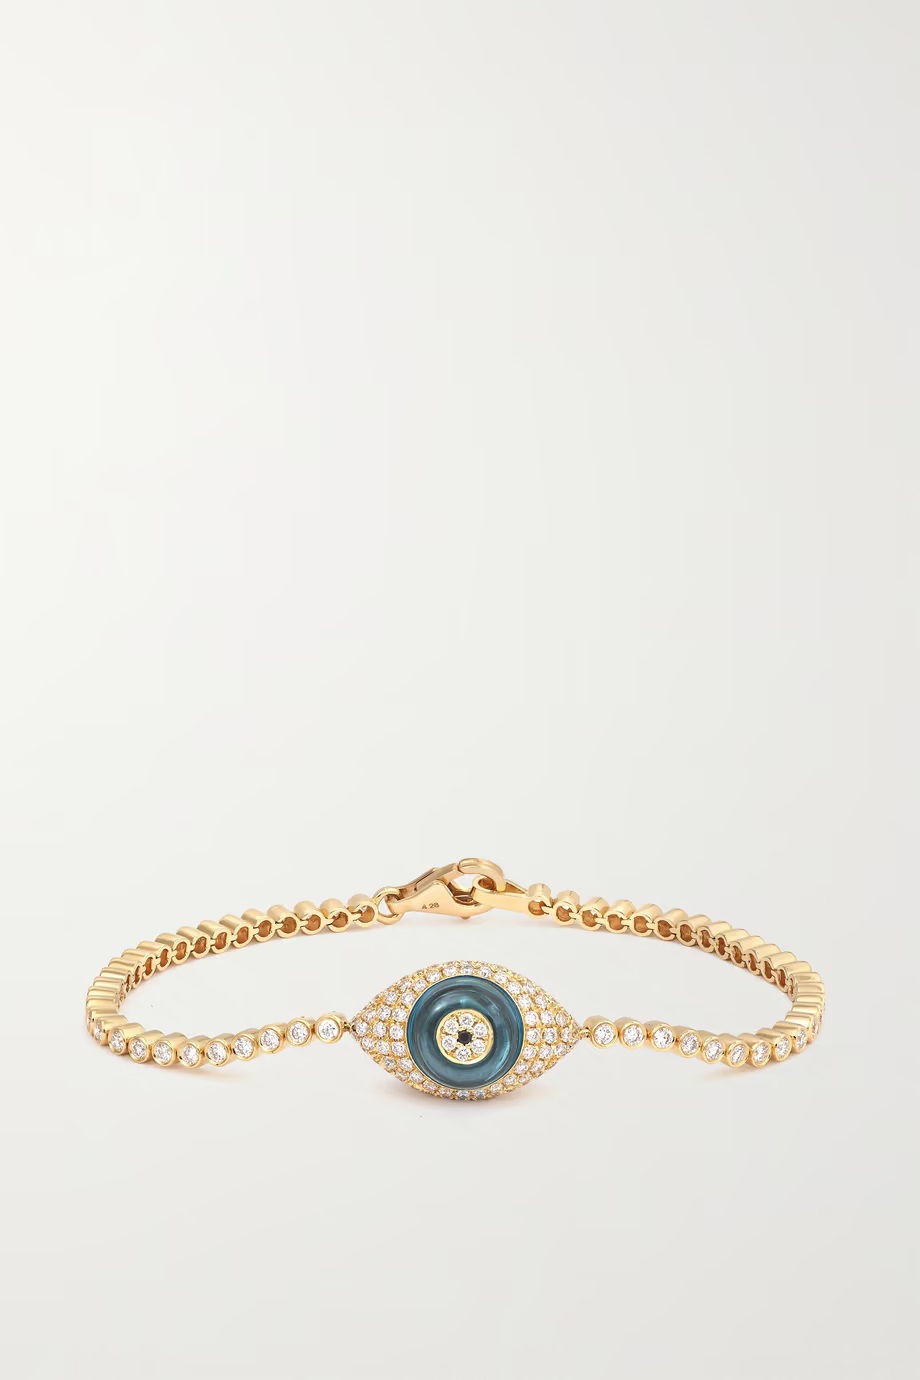 LORRAINE SCHWARTZ 18-karat Gold, Topaz, and Diamond Bracelet